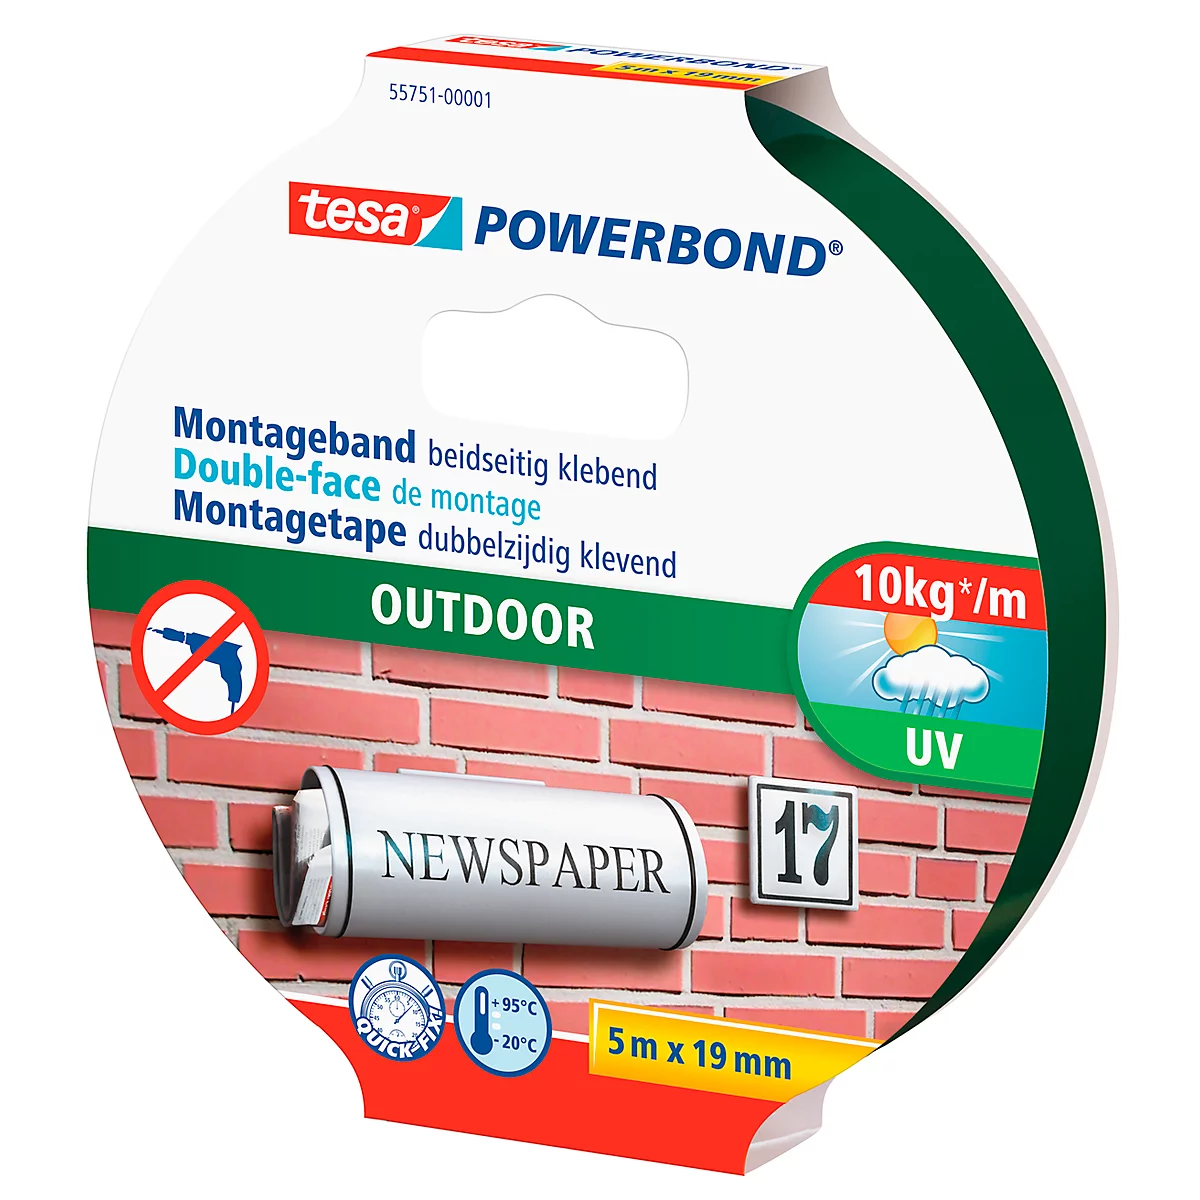 tesa® Powerbond® Cinta adhesiva para exteriores, de doble cara, para uso en exteriores, resistente a la intemperie, resistente a los rayos UV, L 5 m x A 19 mm, verde